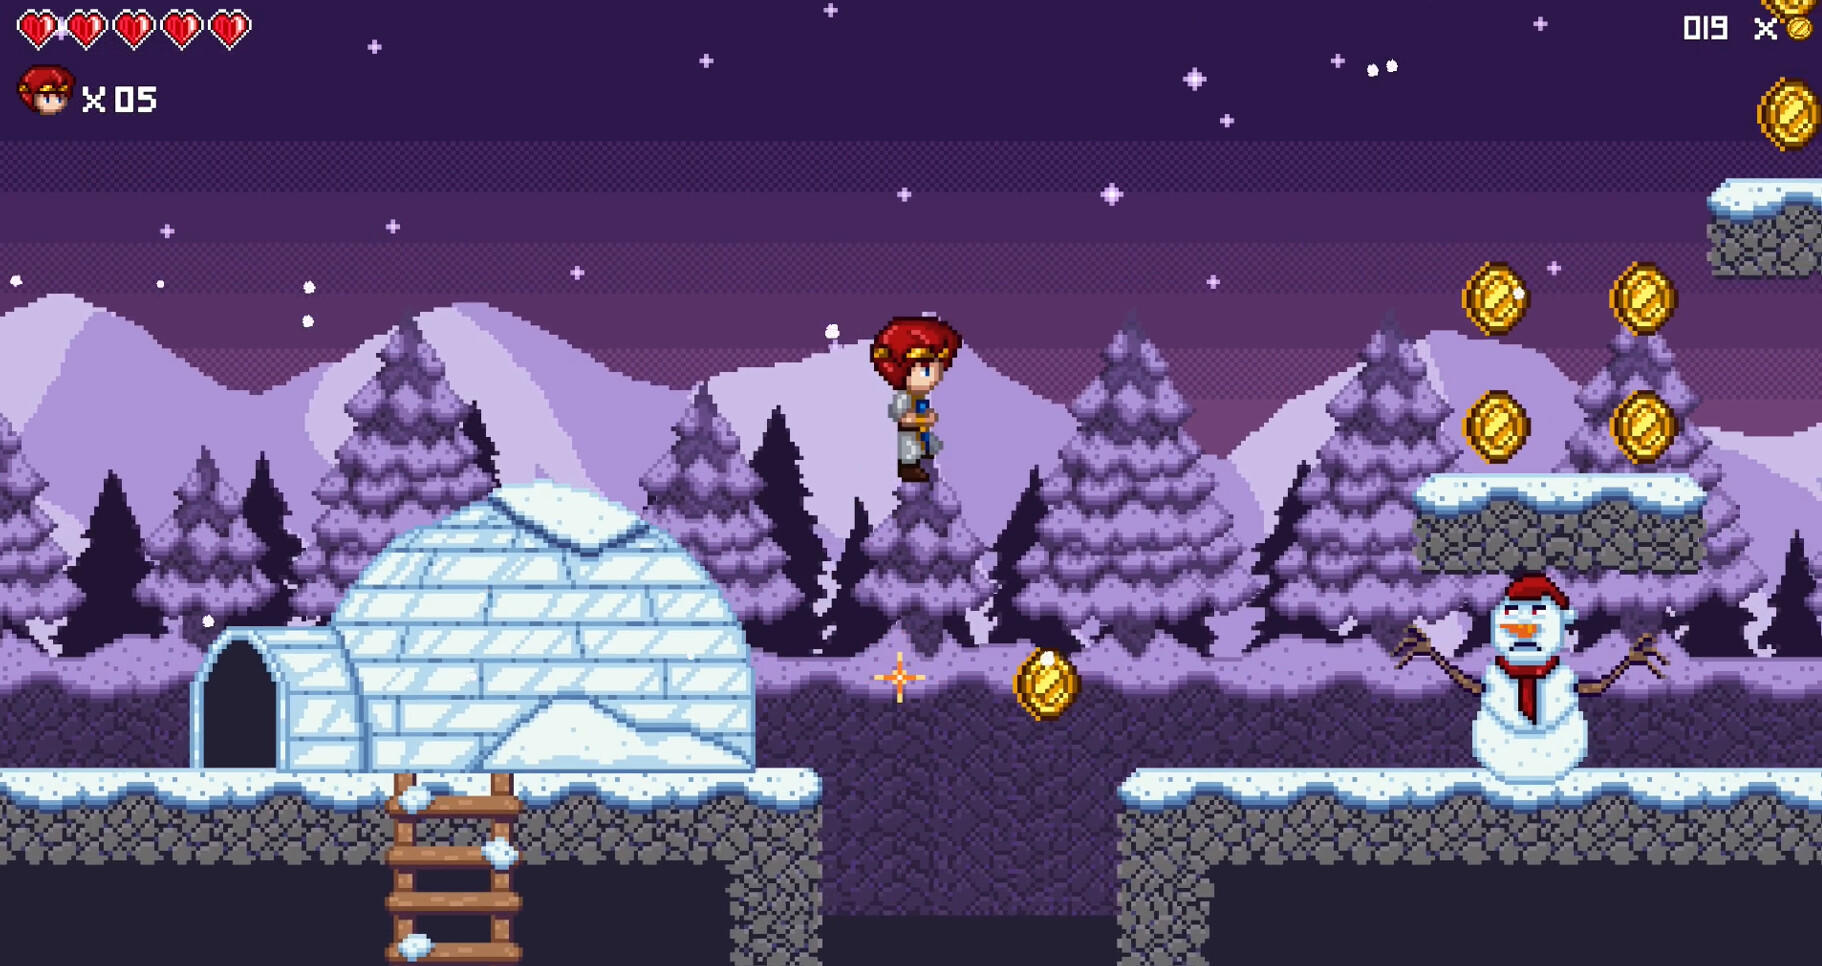 Screenshot 1 of Kepala Merah - Untuk Menyelamat 